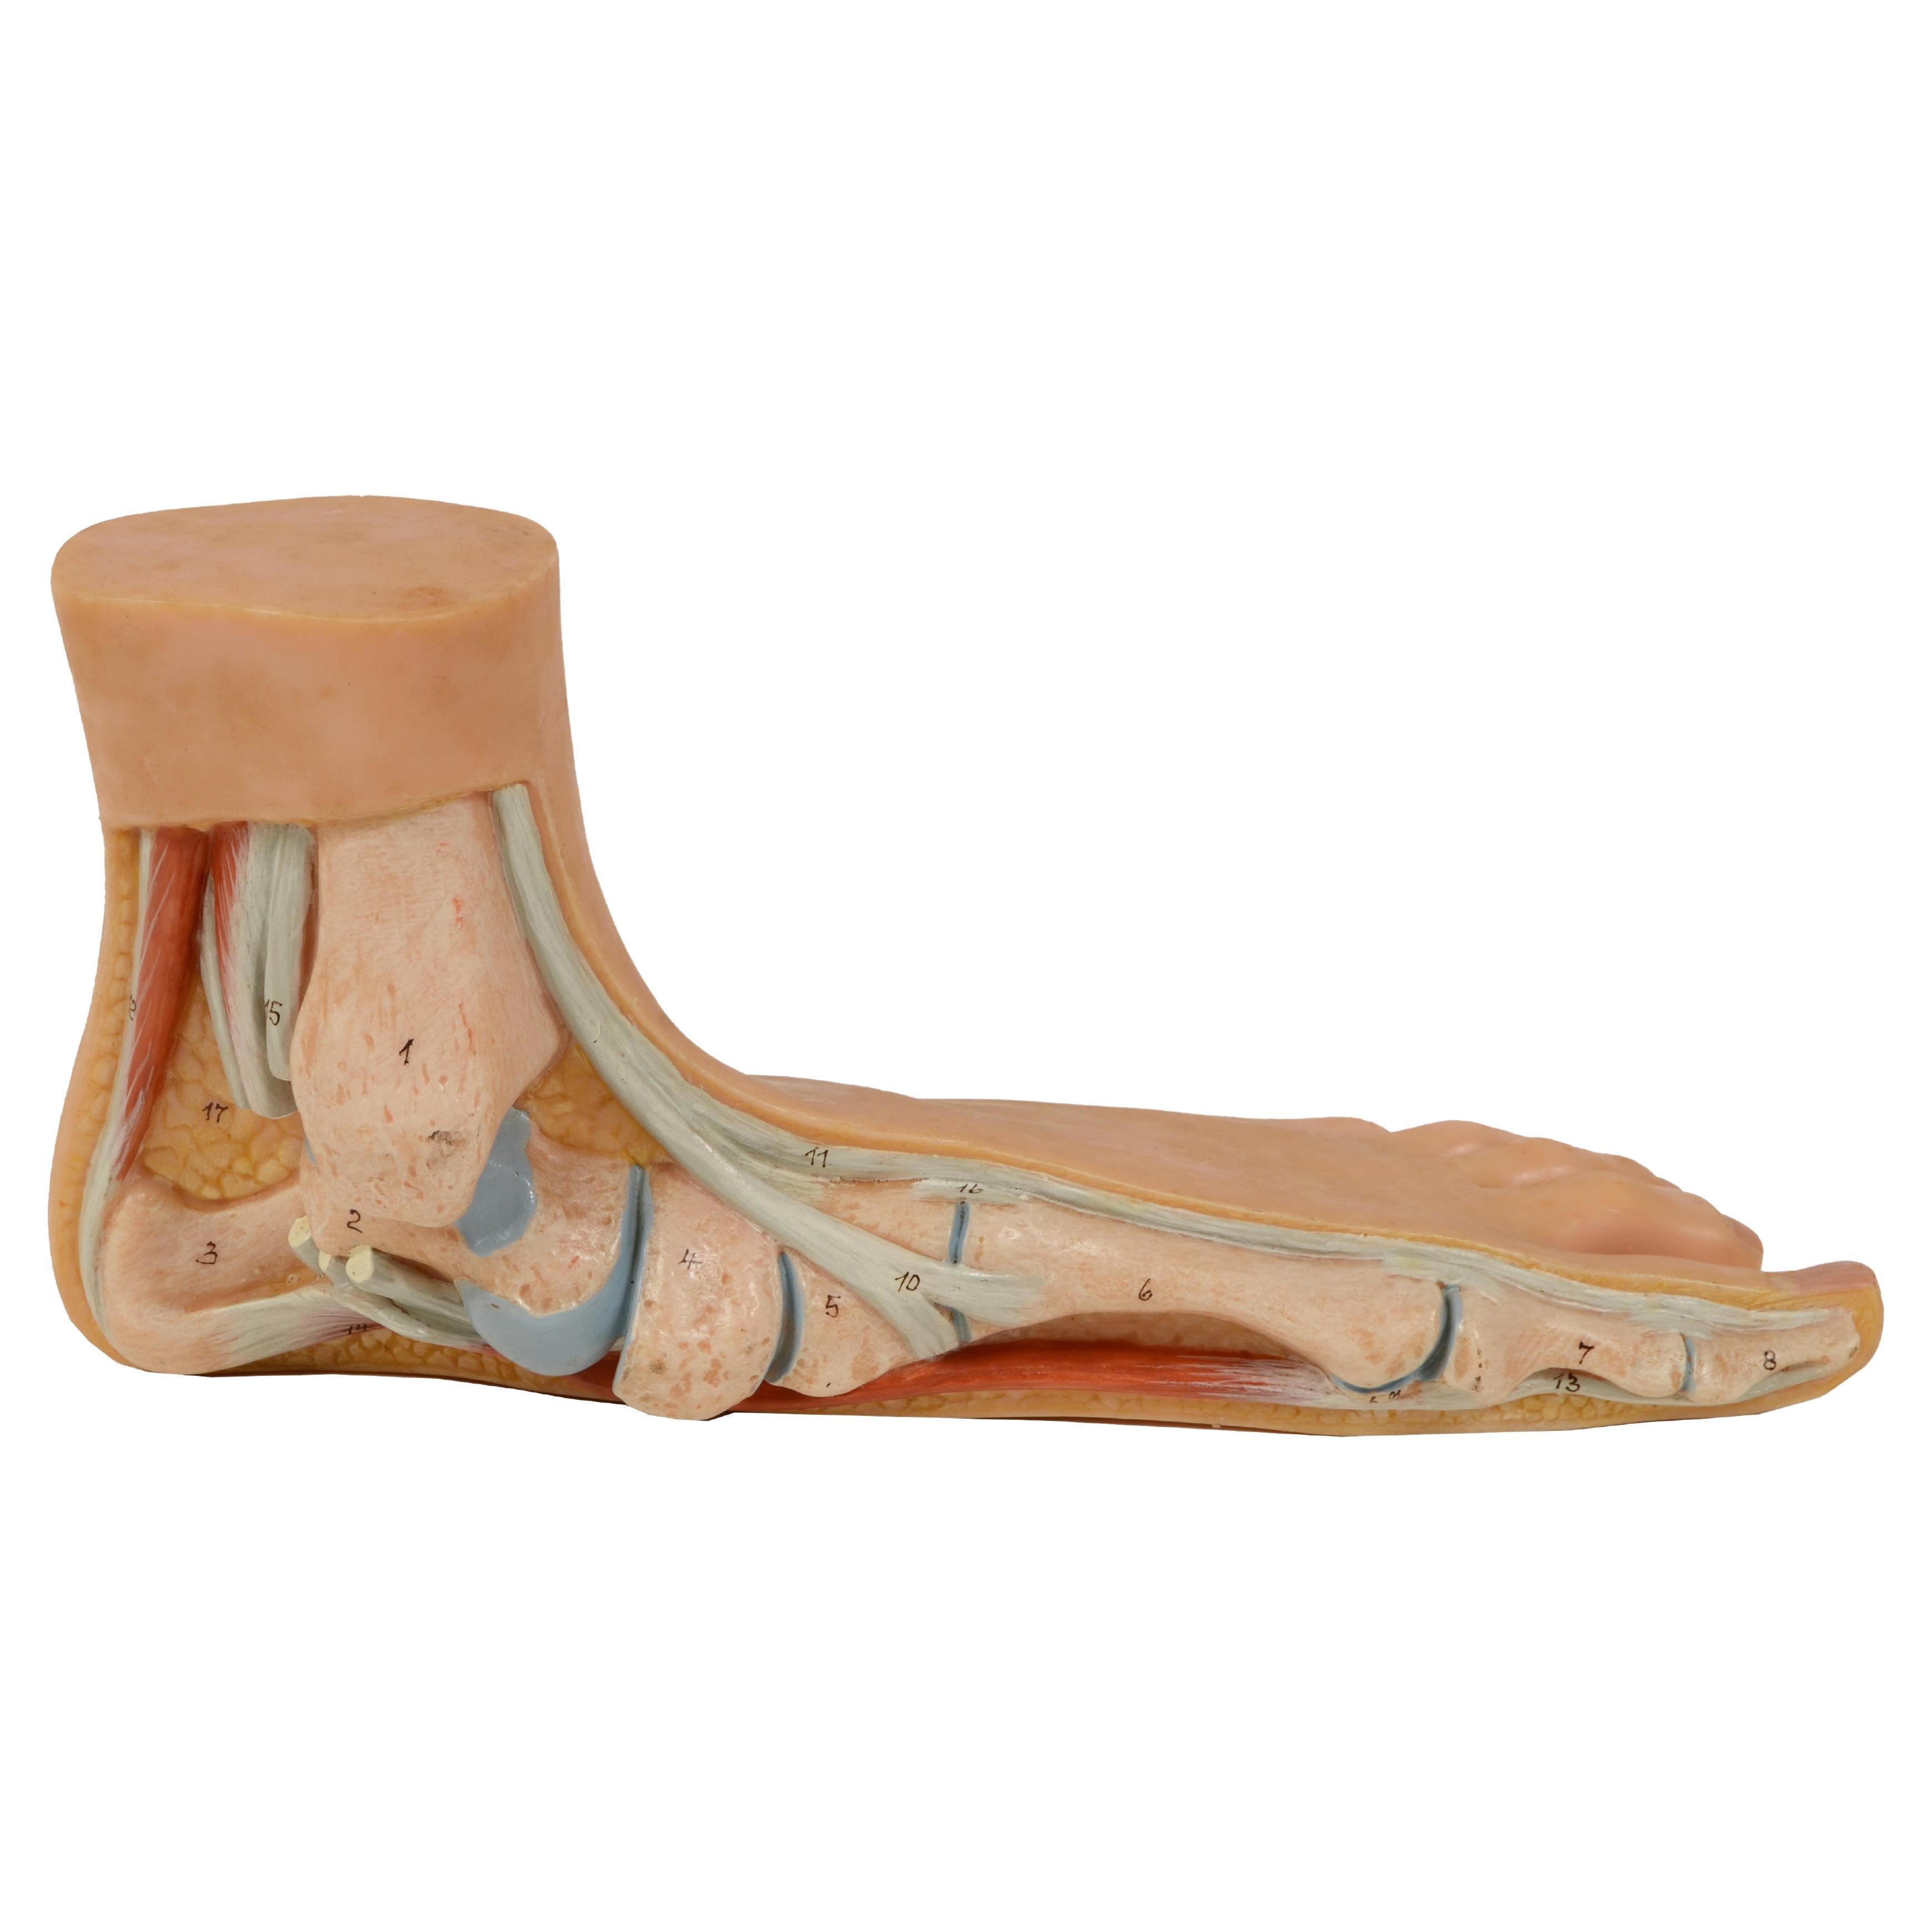 Modèle d'enseignement anatomique des années 1950 de taille normale représentant un pied plat "Pes Planus".